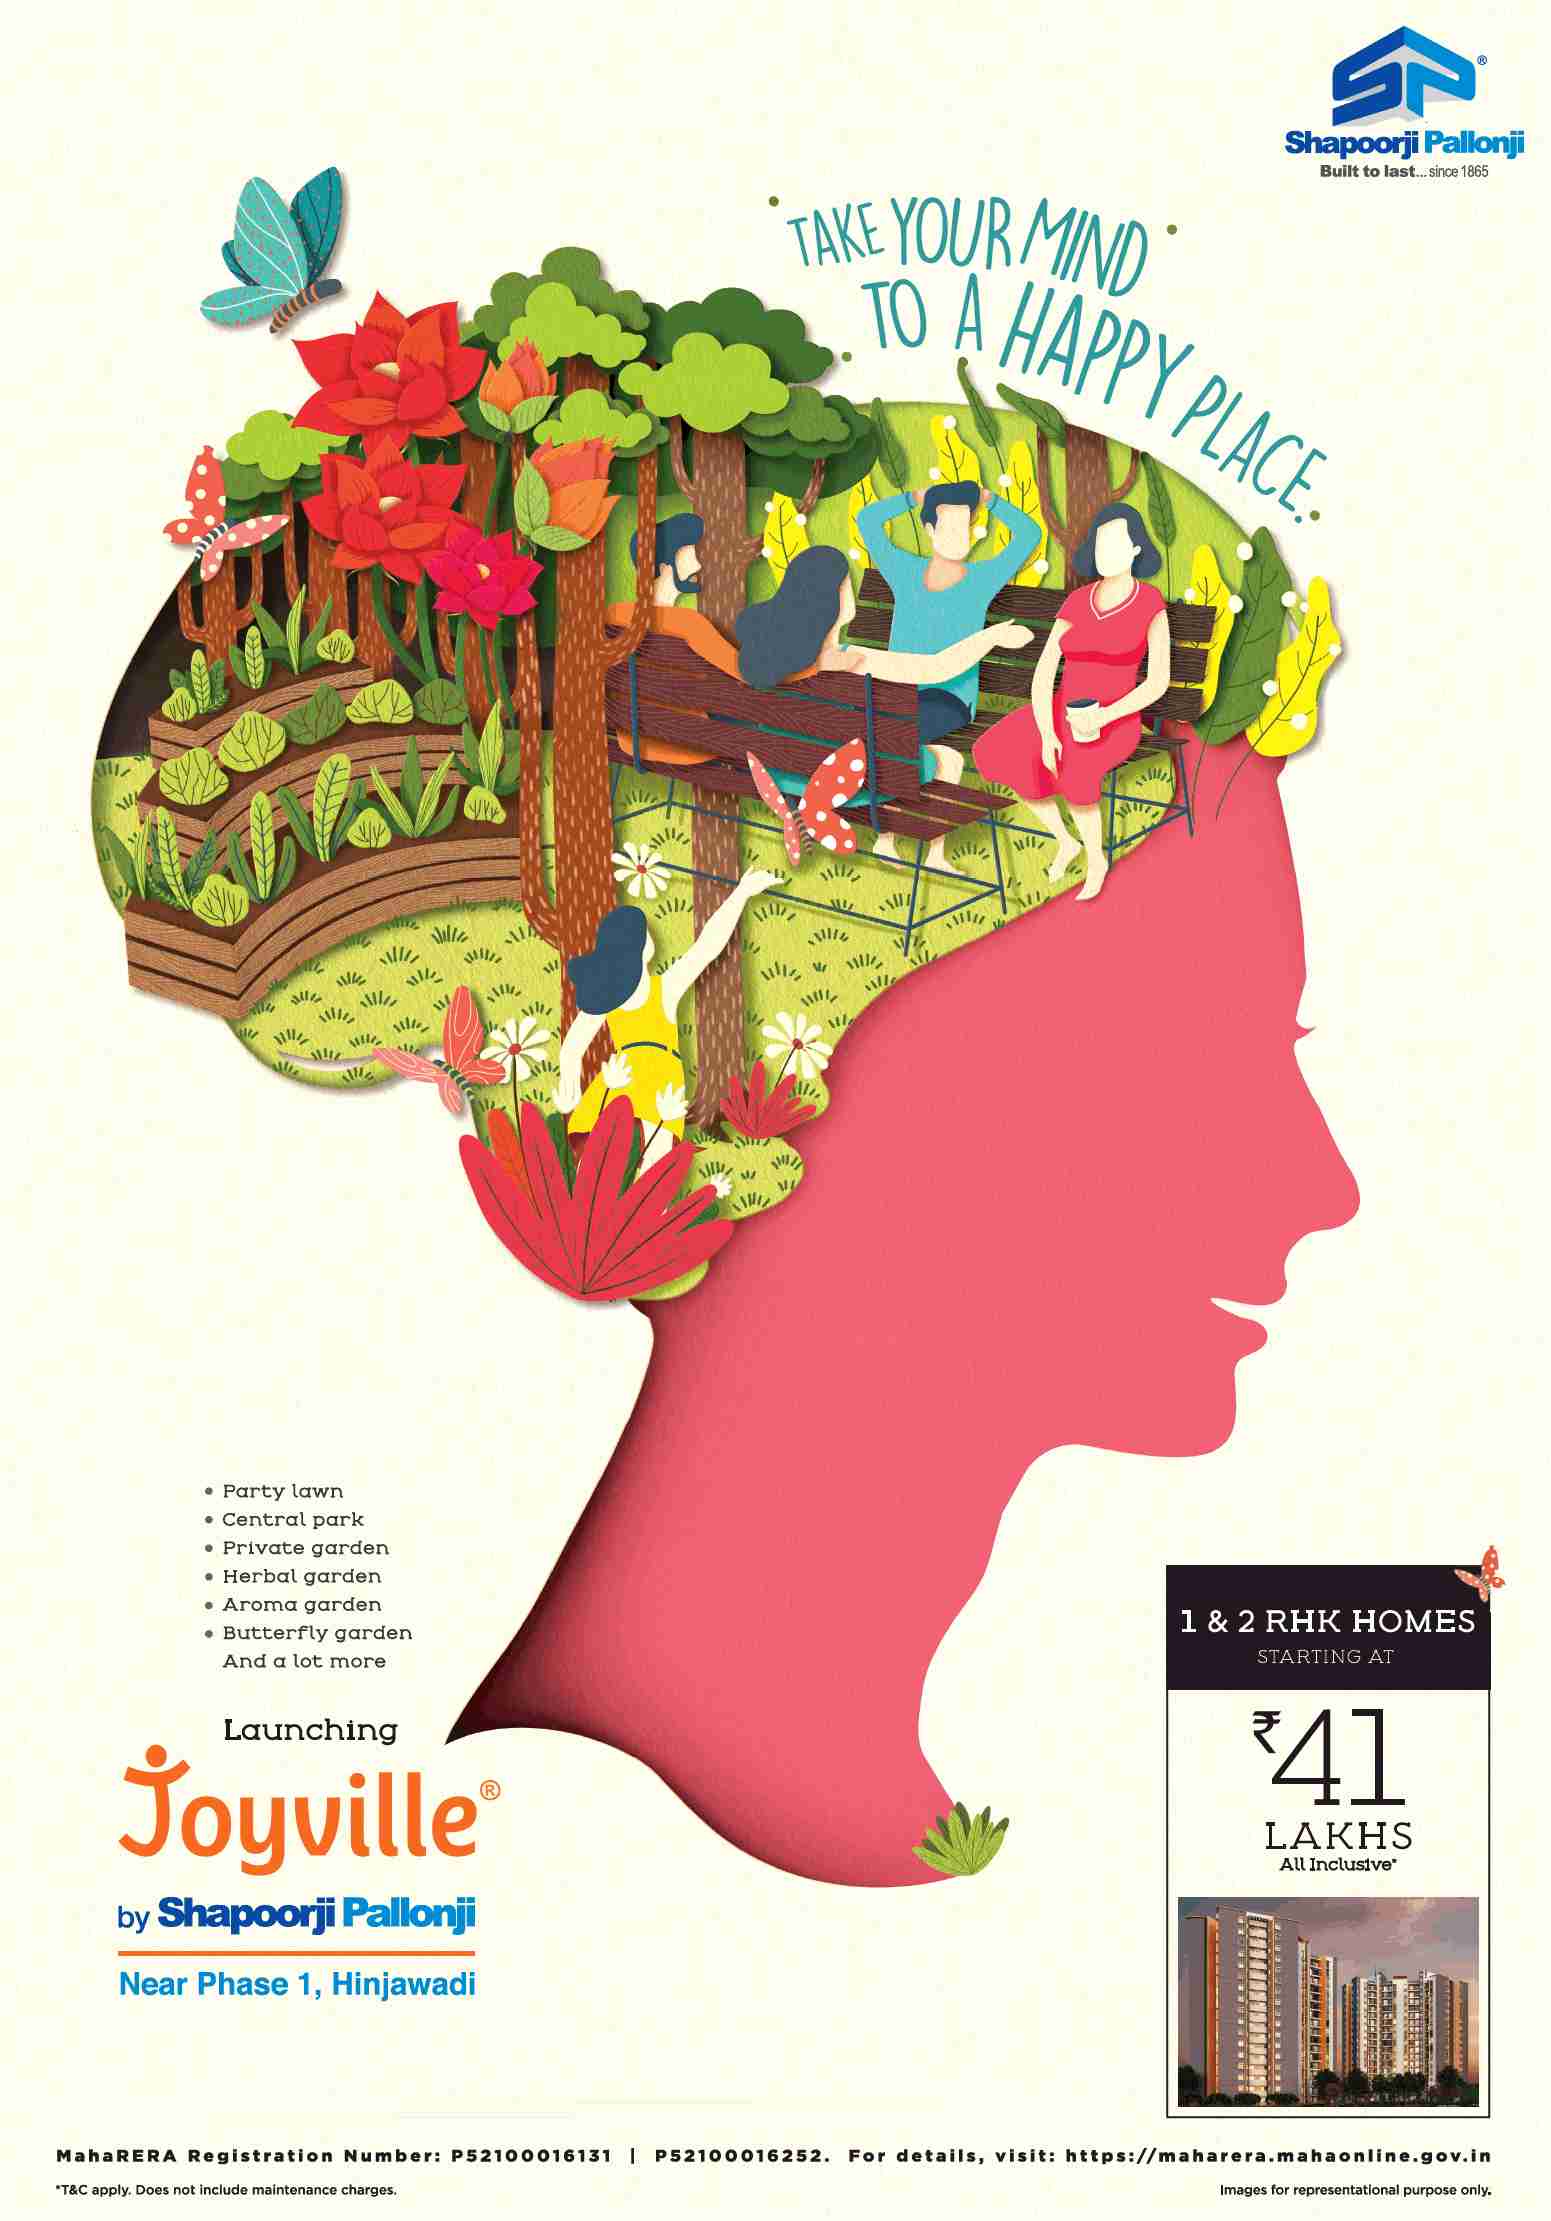 Launching Joyville by Shapoorji Pallonji at Hinjawadi in Mumbai Update